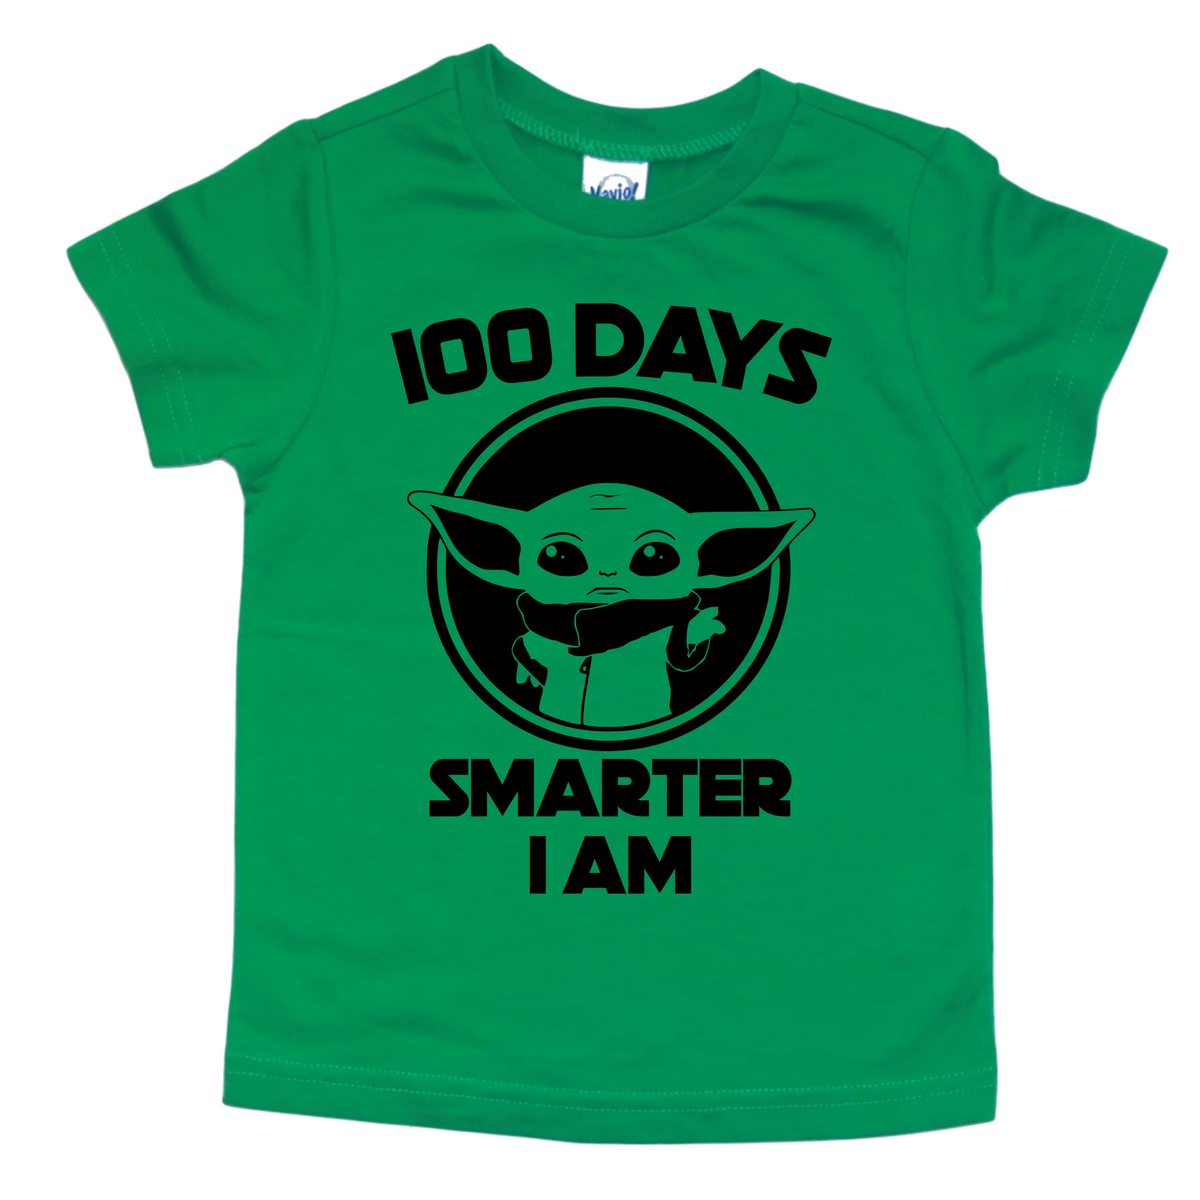 100-days-smarter-i-am-kids-shirt-chark-attack-threads